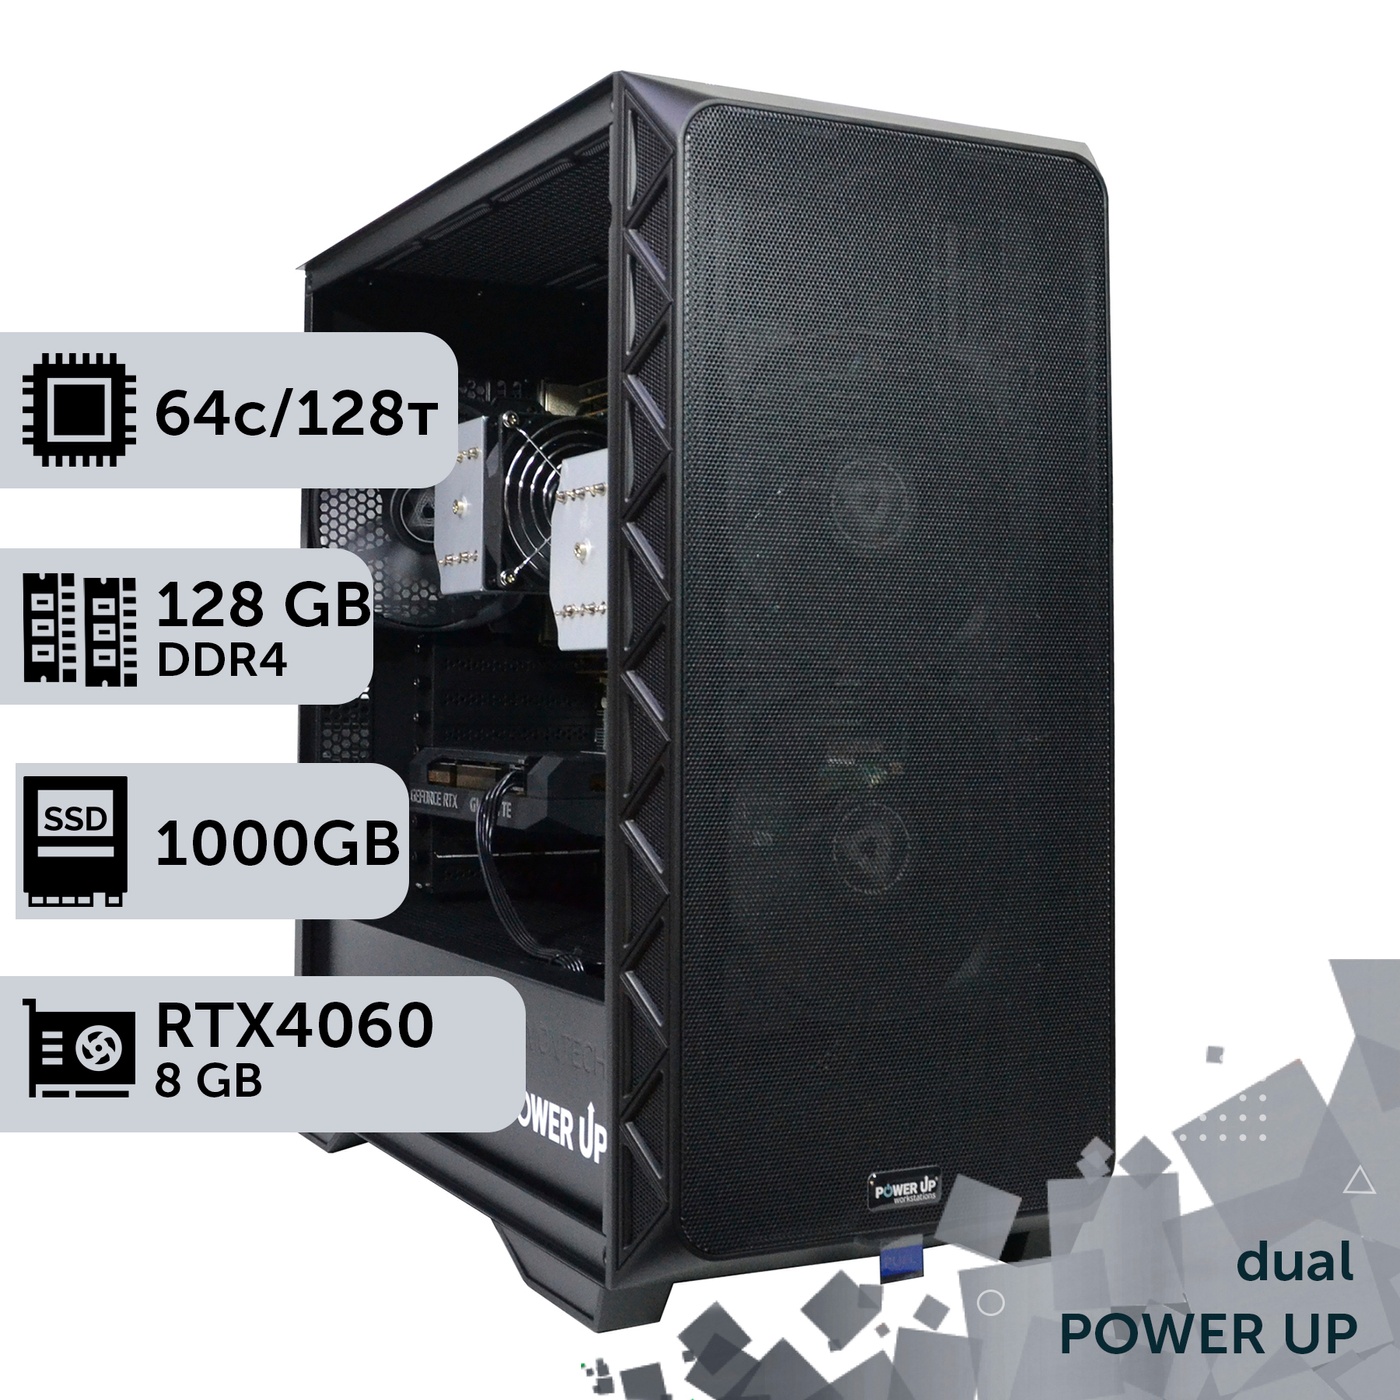 Двухпроцессорная рабочая станция PowerUp #372 AMD EPYC 7551 x2/128 GB/HDD 2 TB/SSD 1TB/GeForce RTX 4060 8GB